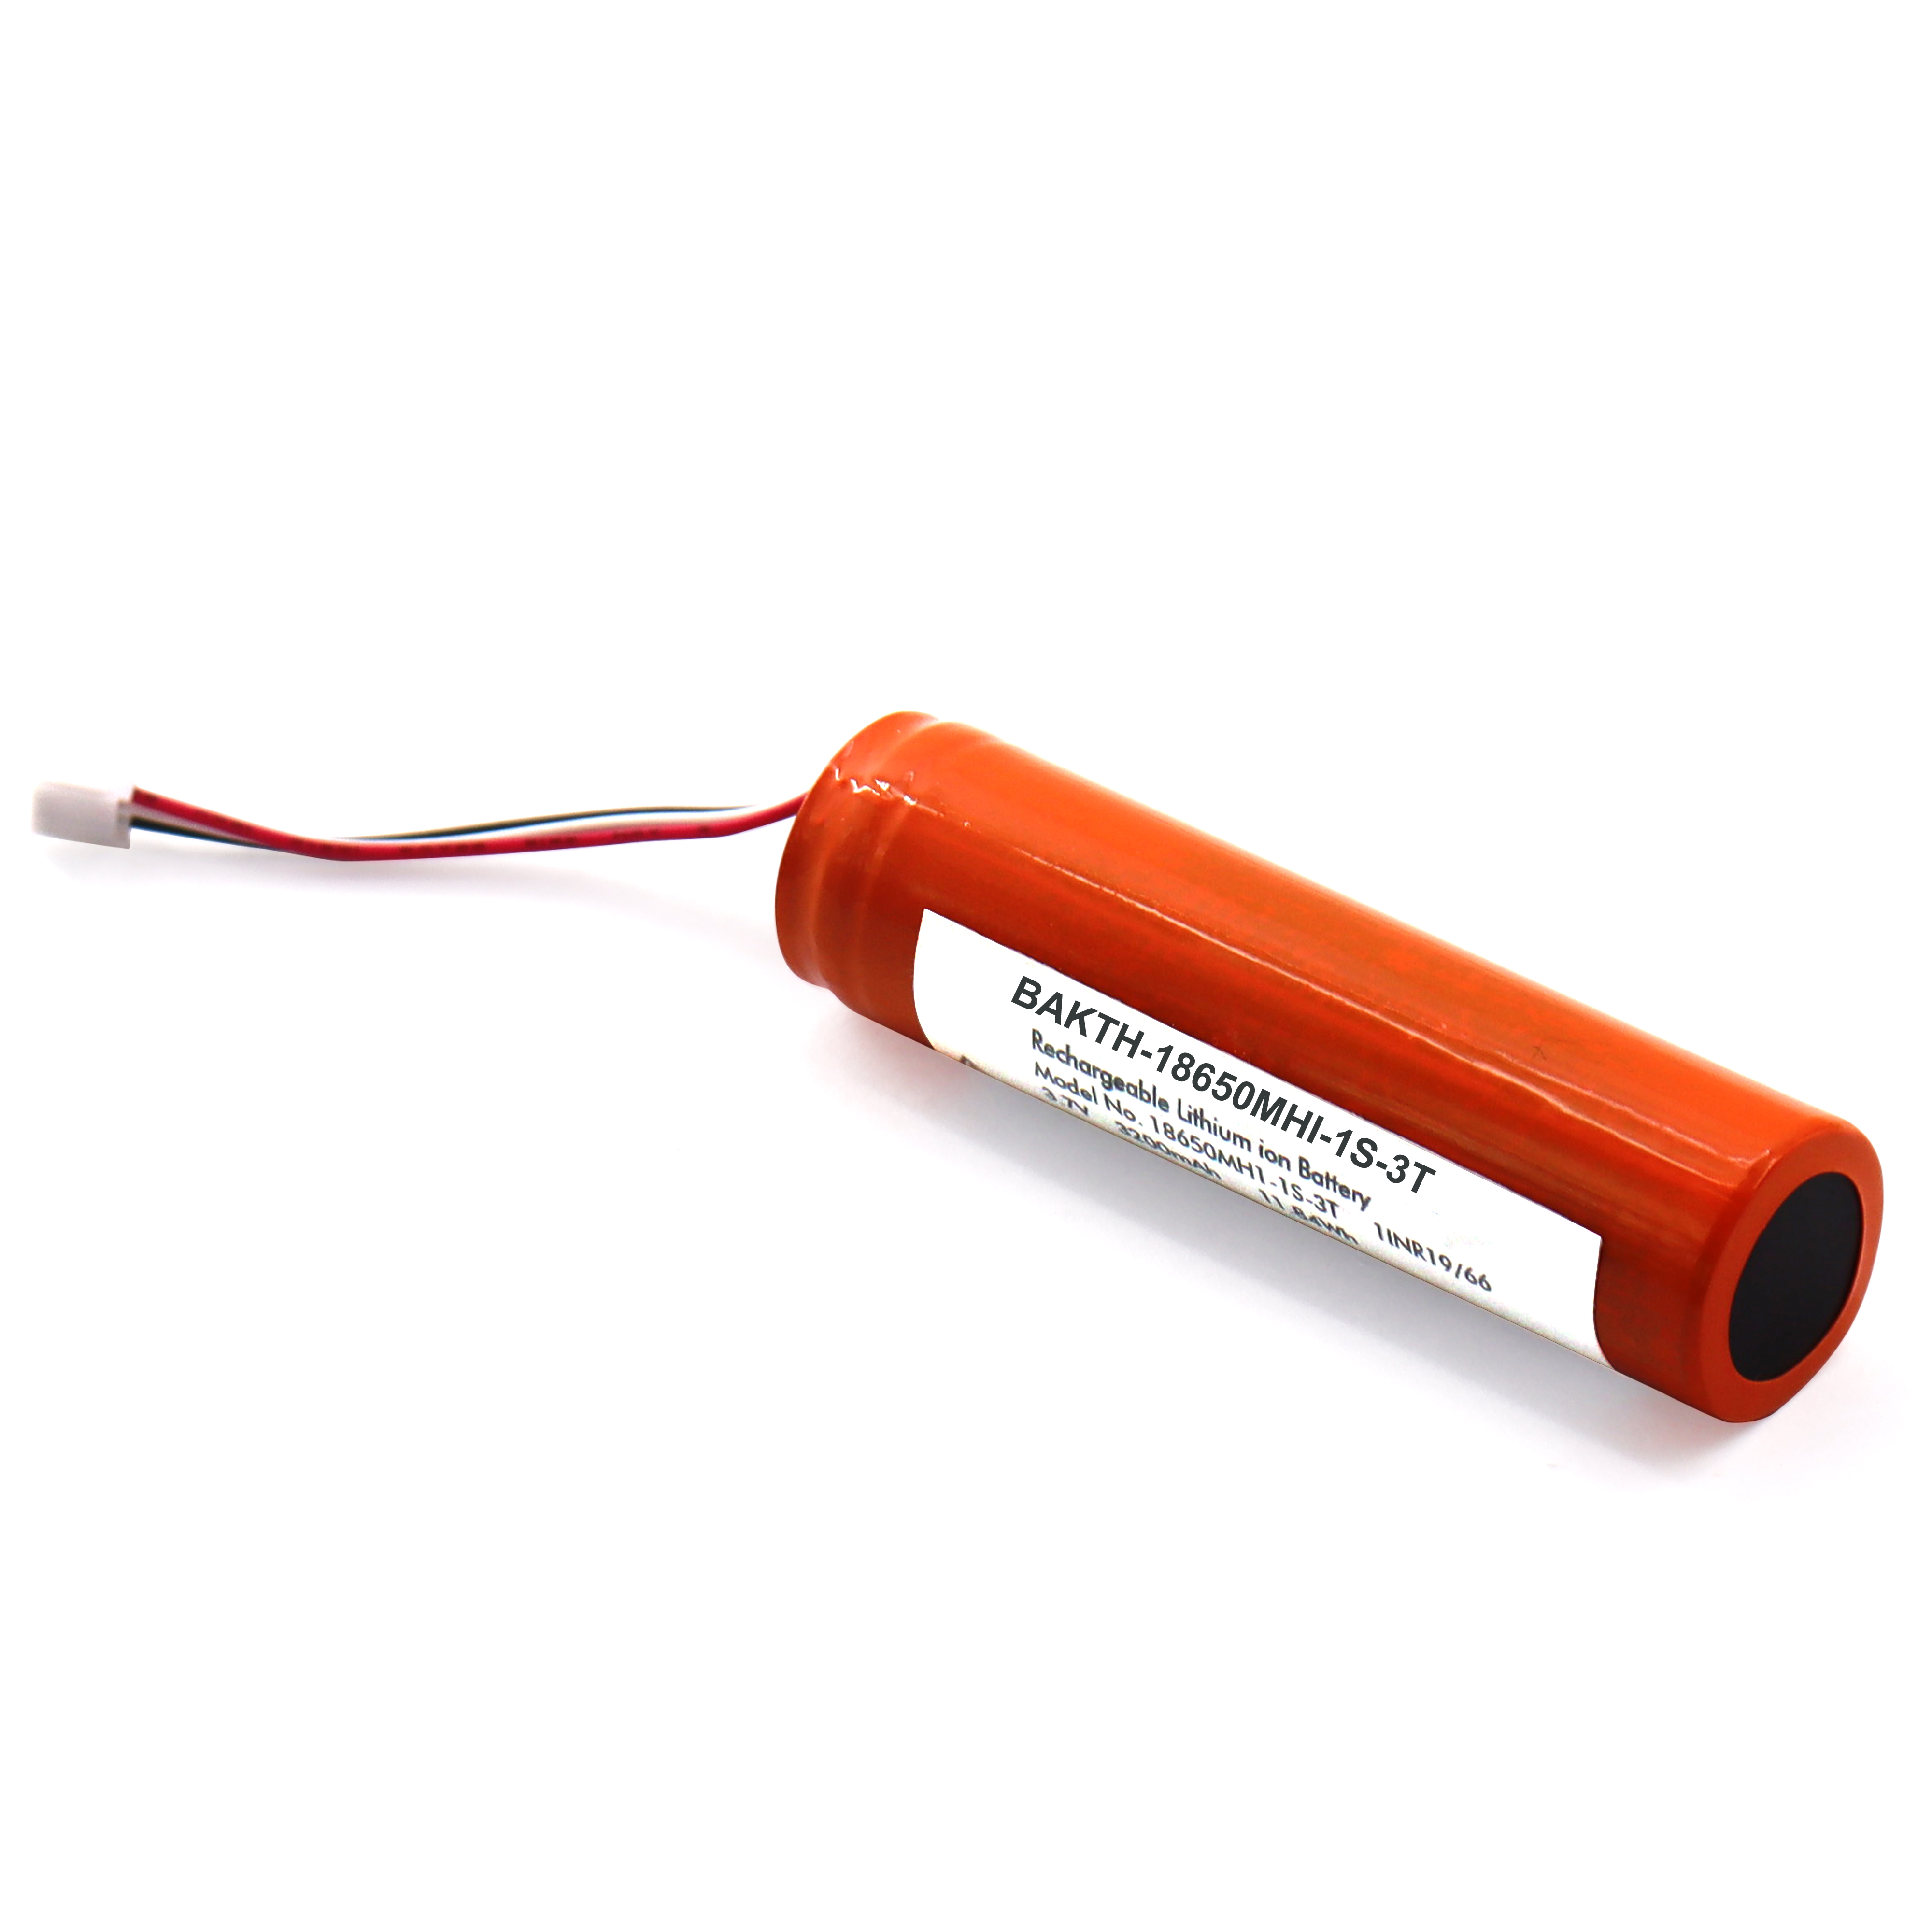 Bateria de longa duração de ciclo Bateria 18650 Bateria recarregável 3,7V 3200mAh Baterias de íons de lítio